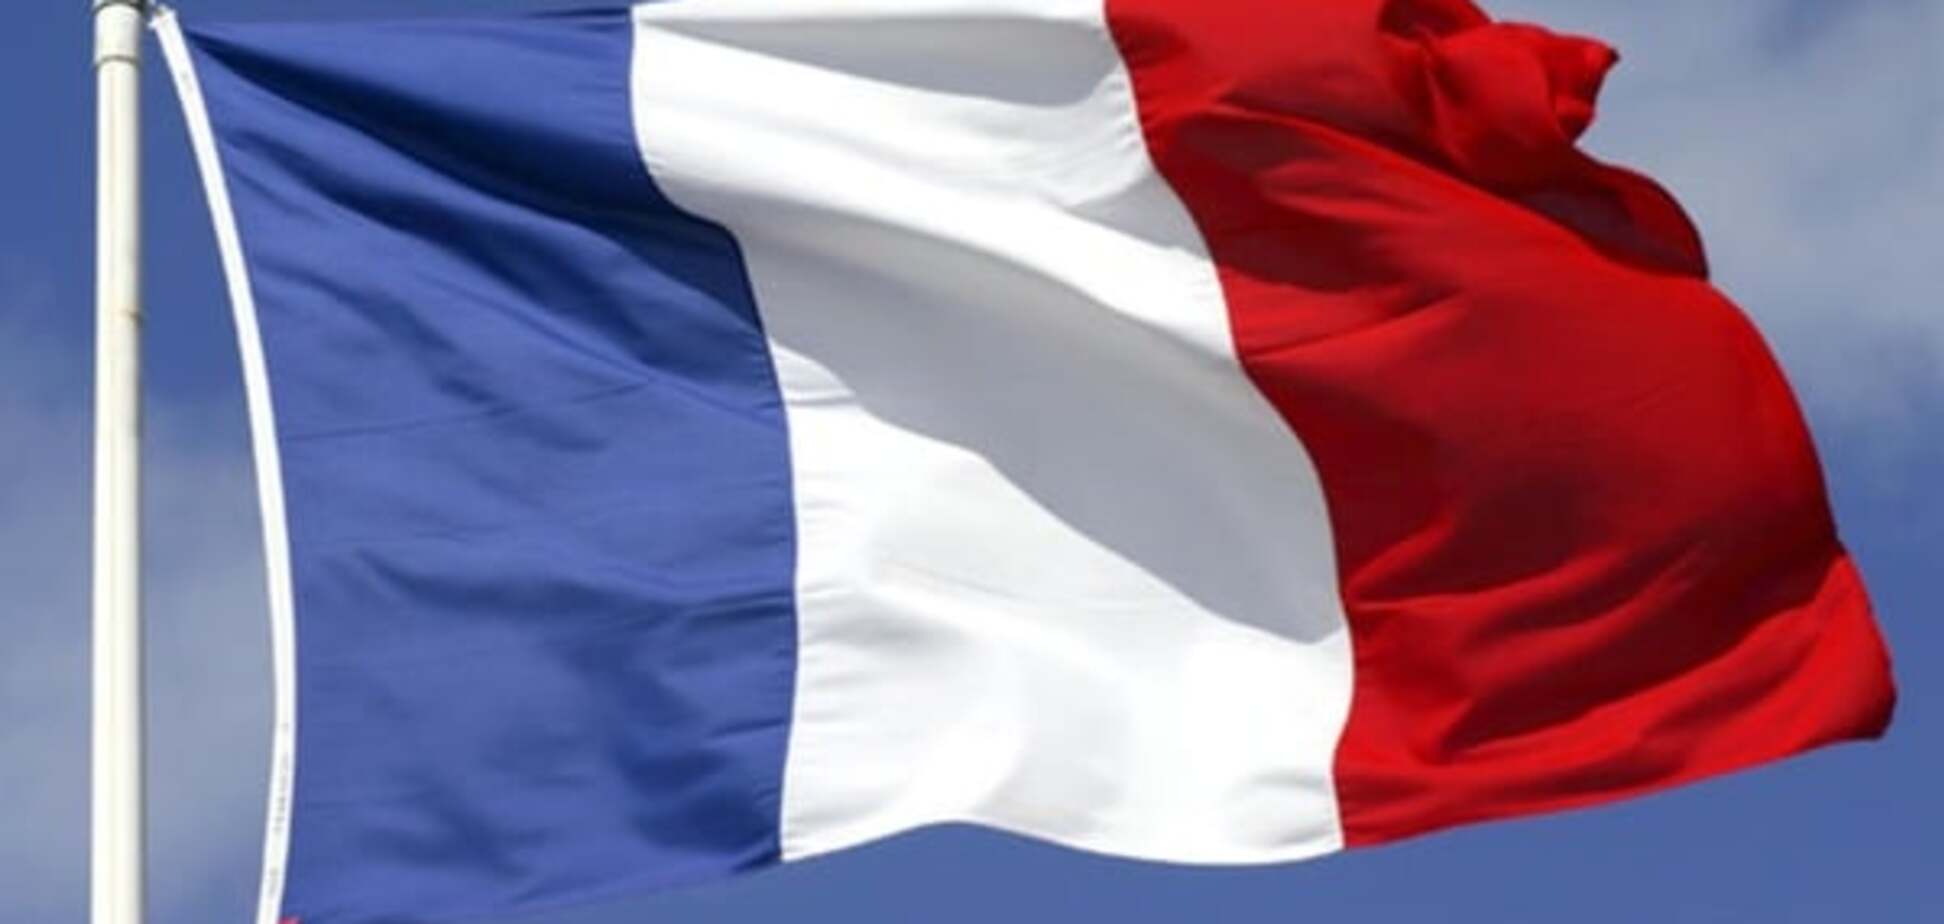 Флаг Франции